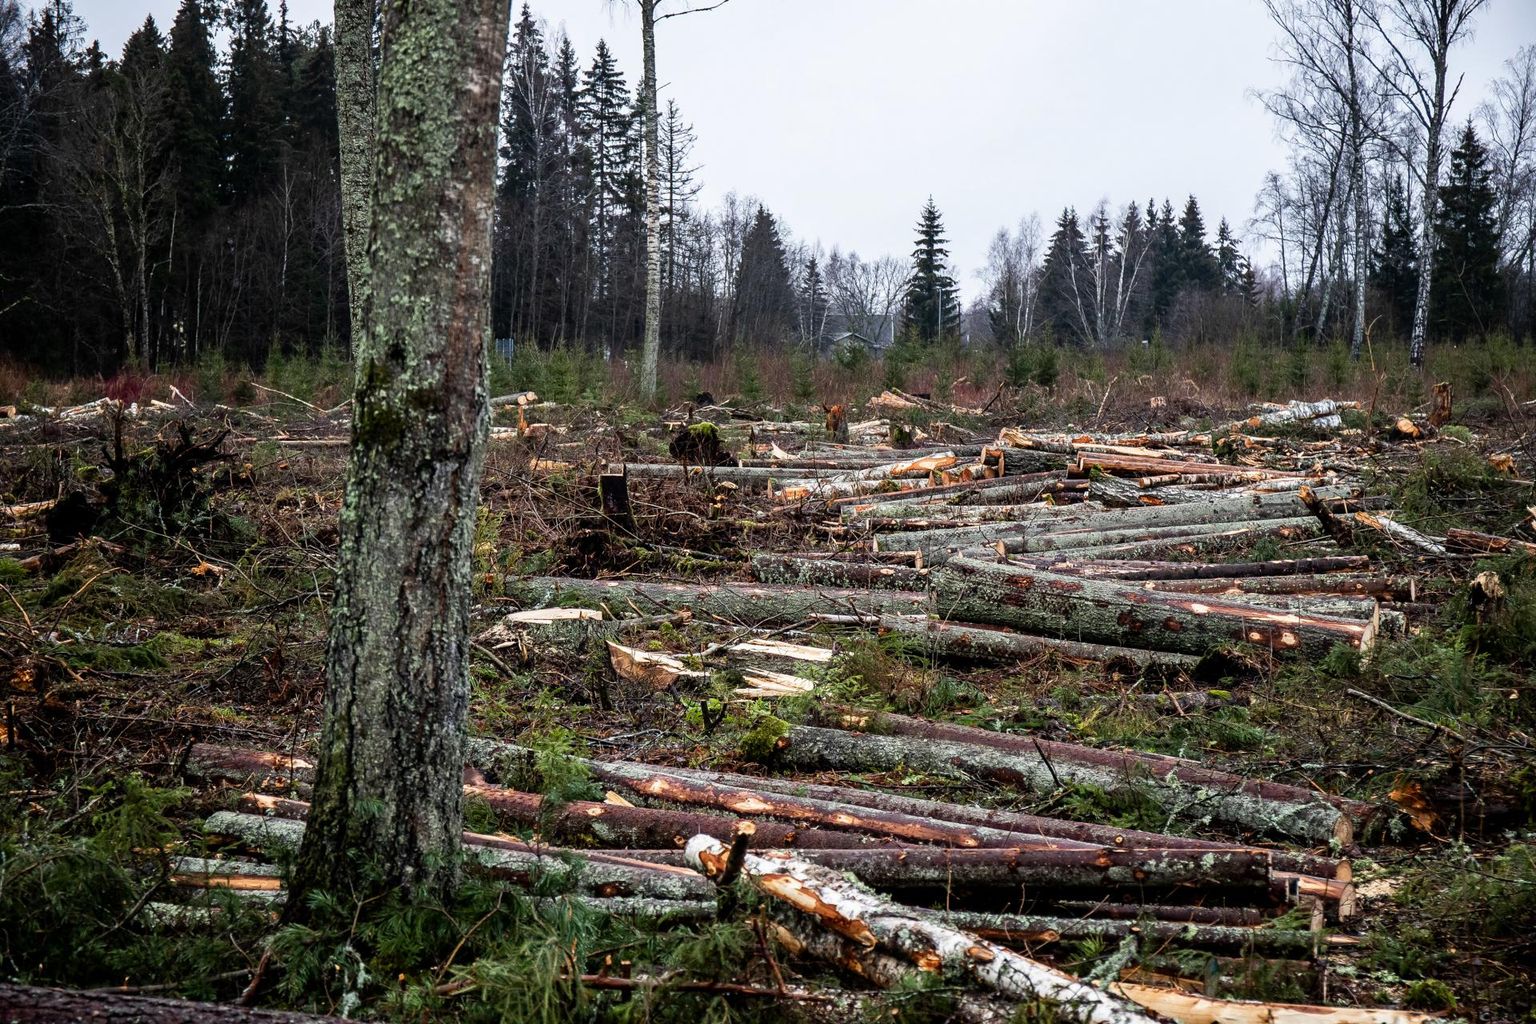 Metsanduse arengukava keskkonnamõjude hindamise programmi koostajat ähvardab oht jääda vaidluses raiemahu üle kahe tule, metsatöösturite ja looduskaitsjate vahele.